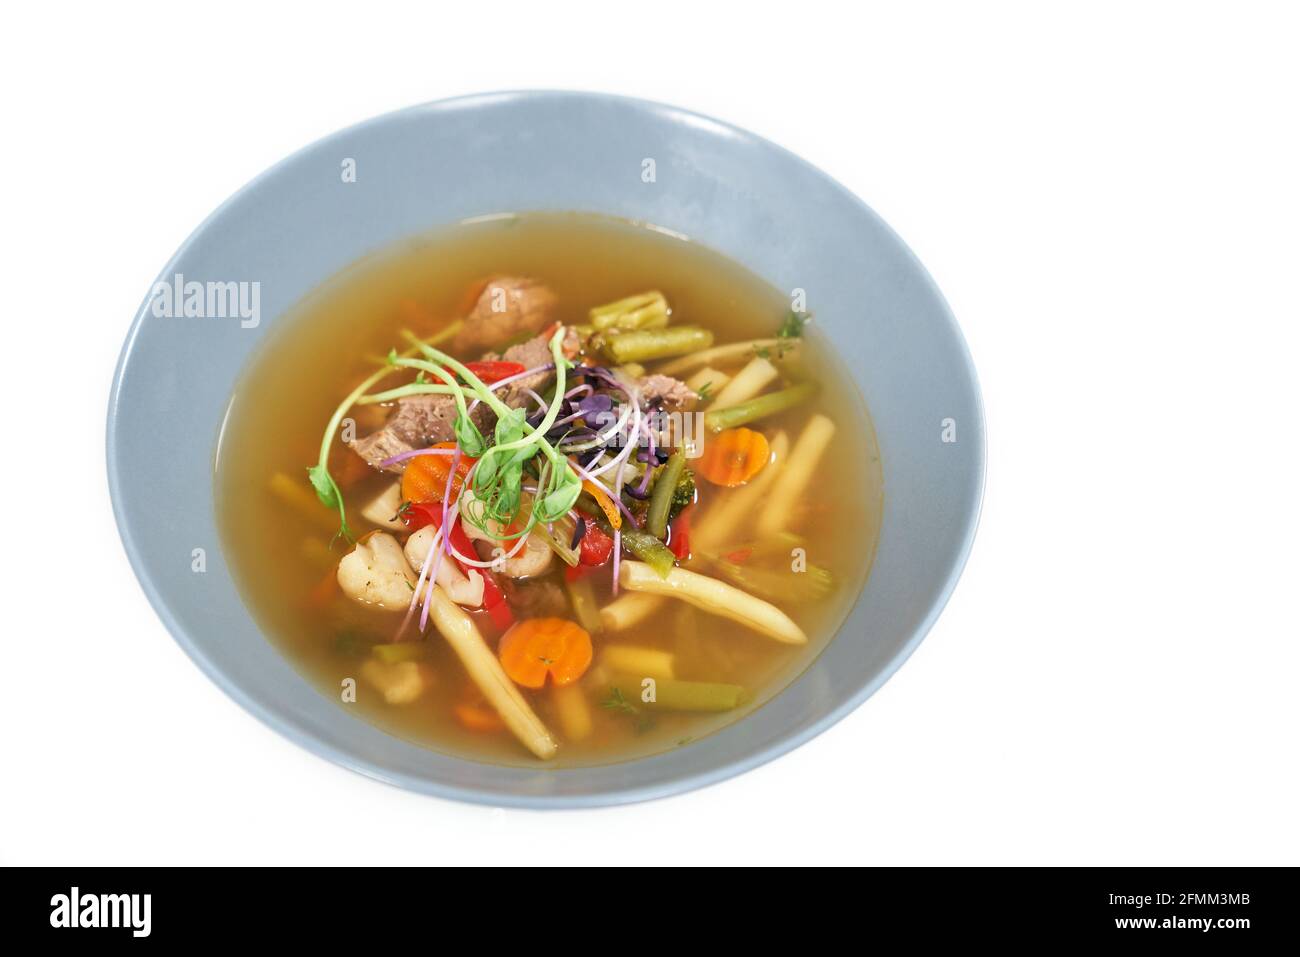 Nahaufnahme des blauen Tellers mit einer gesunden, appetitlichen Gemüsesuppe. Konzept der Suppe mit verschiedenen Gemüsesorten zur Aufrechterhaltung des Gewichts und der Körperform. Stockfoto